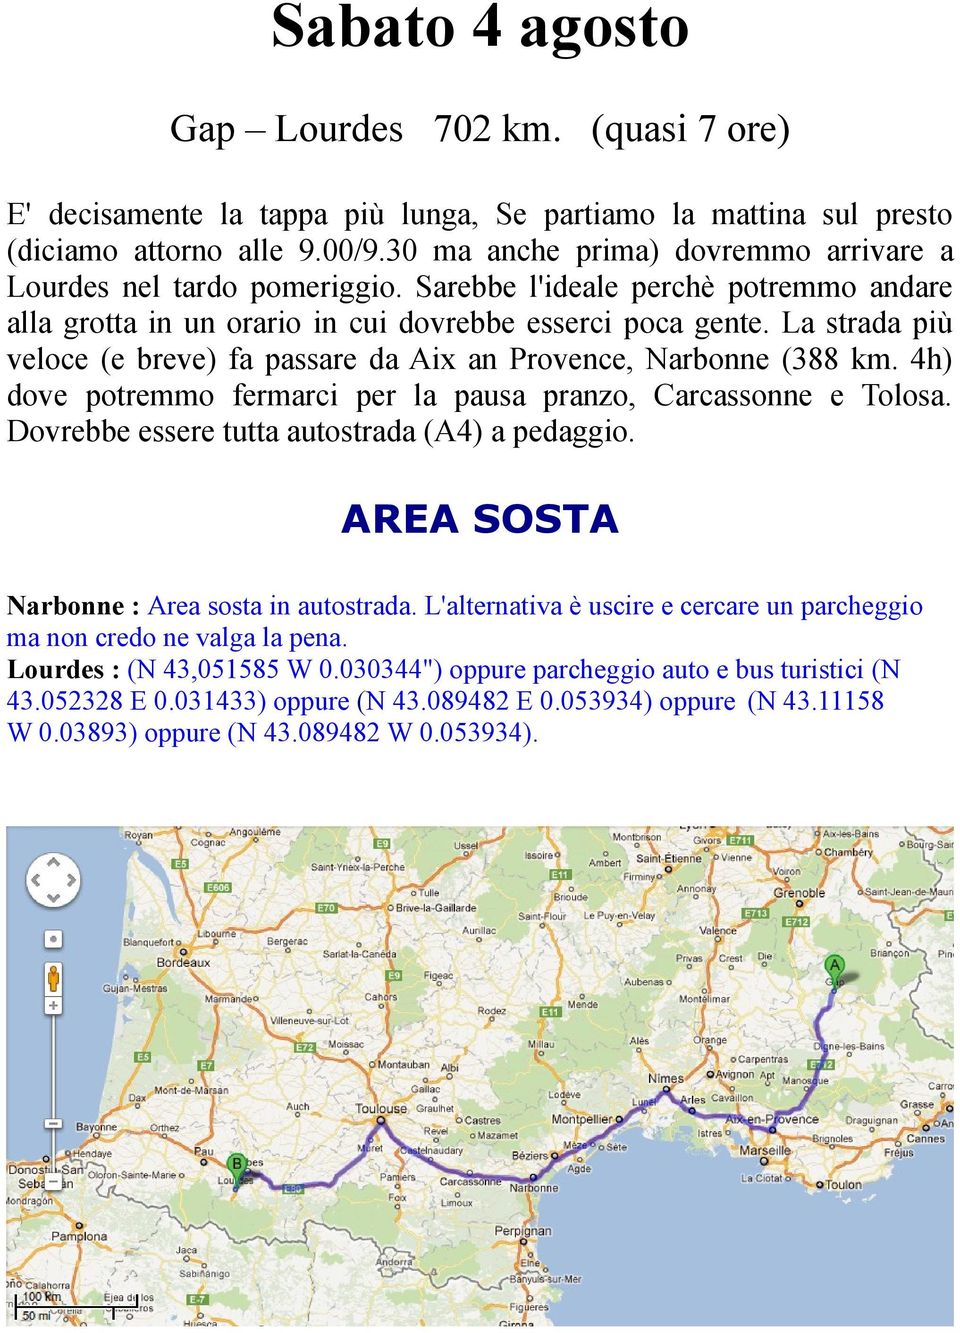 La strada più veloce (e breve) fa passare da Aix an Provence, Narbonne (388 km. 4h) dove potremmo fermarci per la pausa pranzo, Carcassonne e Tolosa. Dovrebbe essere tutta autostrada (A4) a pedaggio.